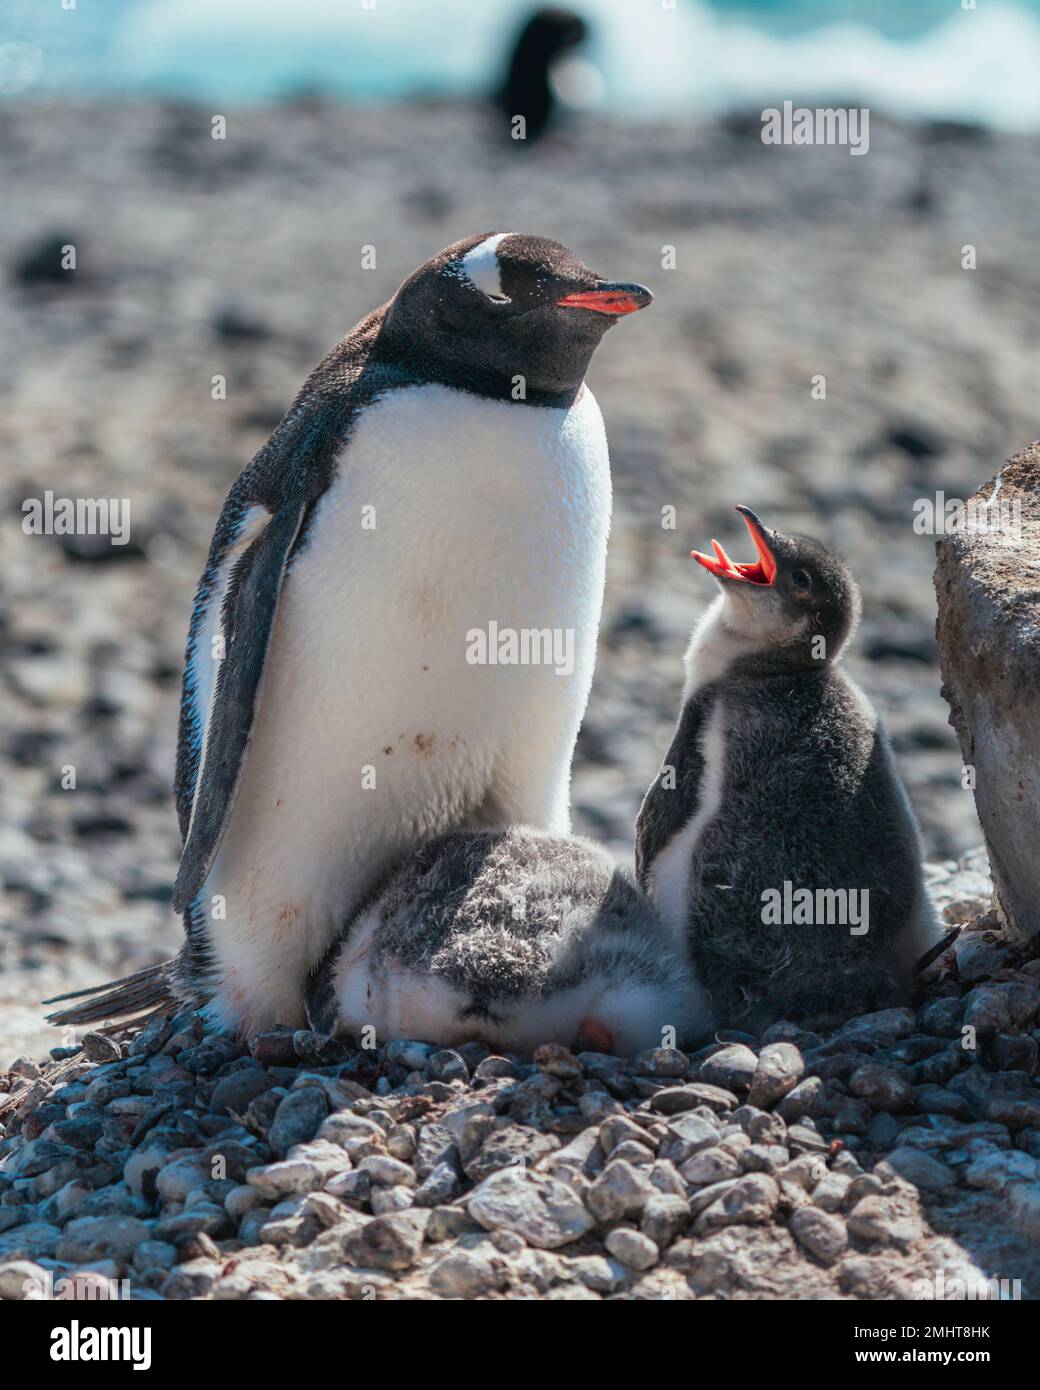 Eine Gentoo-Tussi verlangt von ihrer Mutter Essen, während sie verzweifelt versucht, ihn zu ignorieren. Brown Bluff, die antarktische Halbinsel. Stockfoto